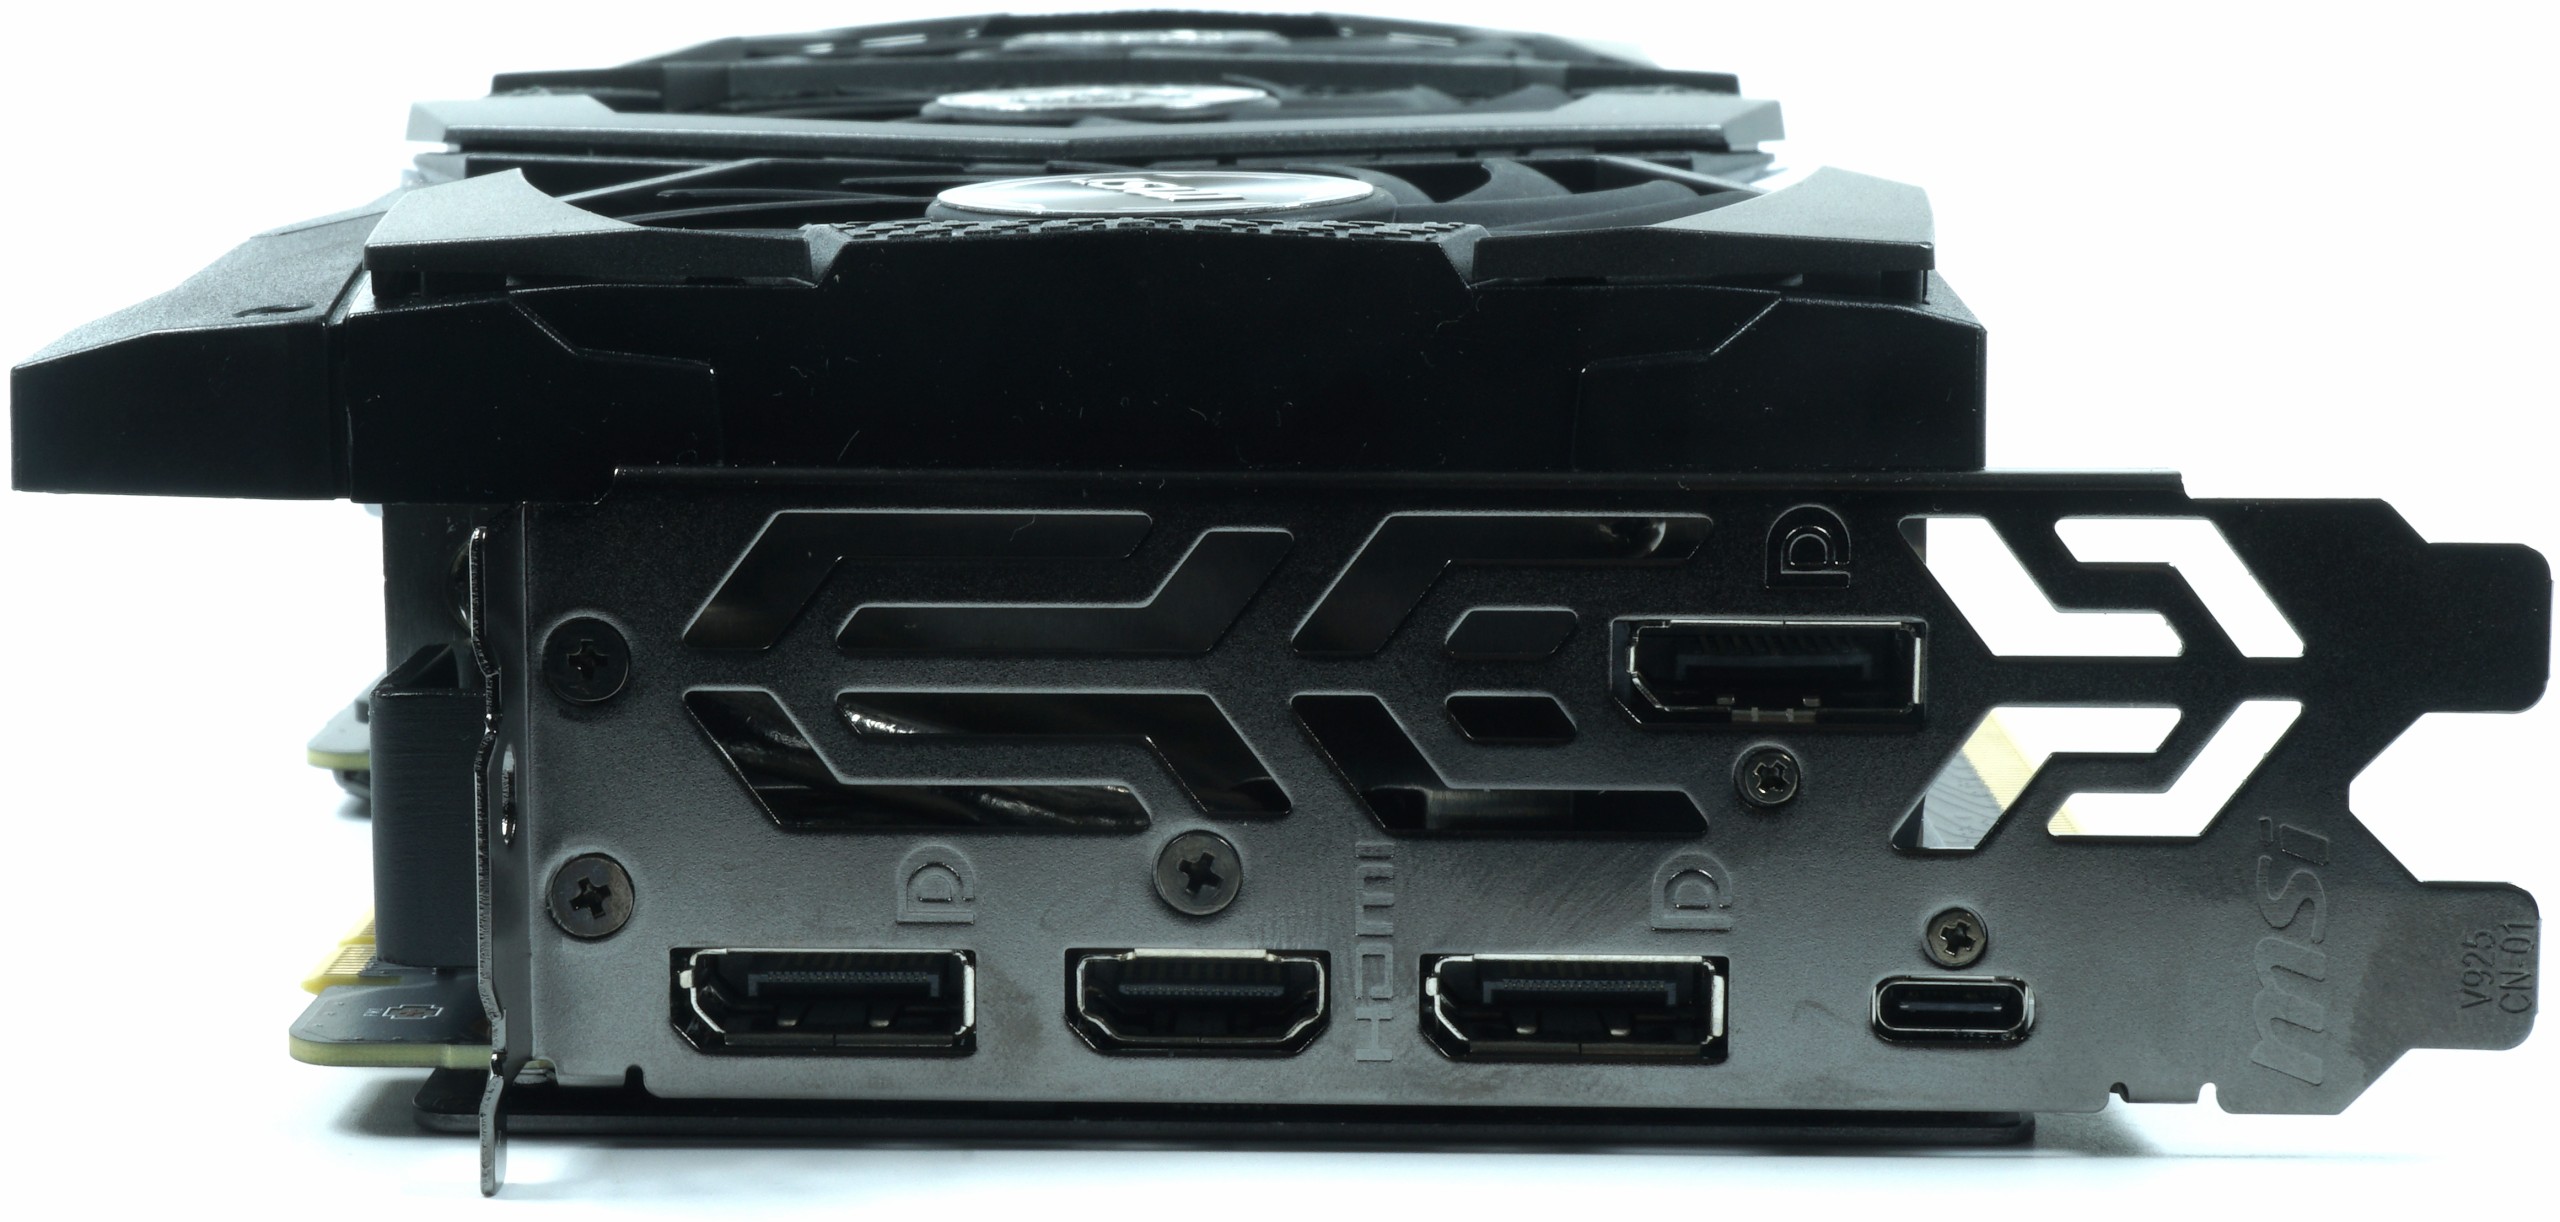 Image 8 : Test de la MSI GeForce RTX 2080 Super Gaming X Trio, une carte puissante et silencieuse